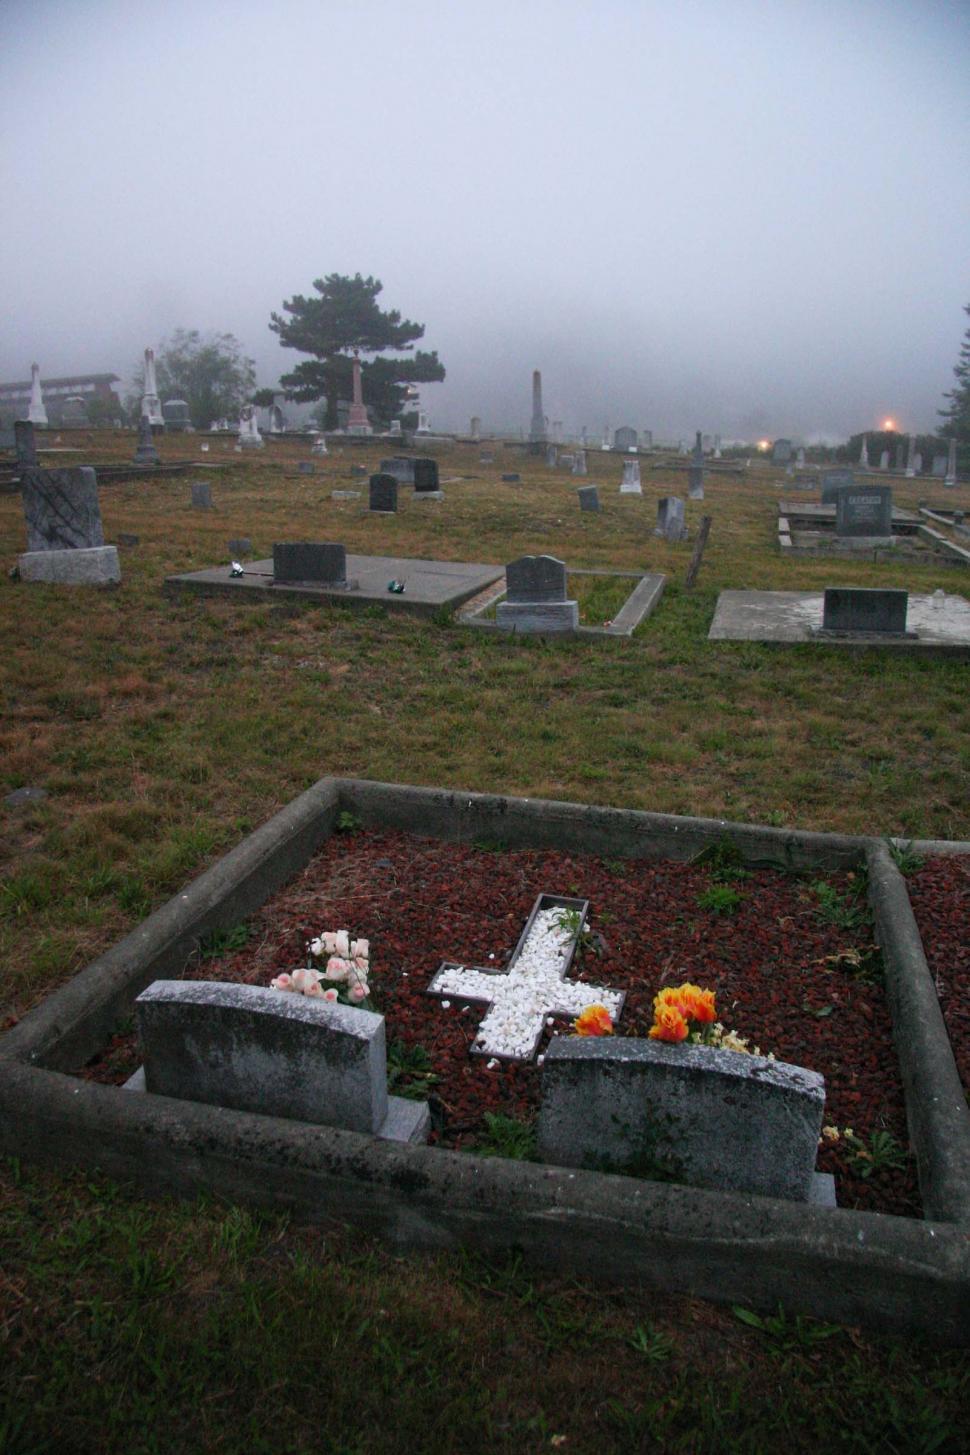 Burial plots